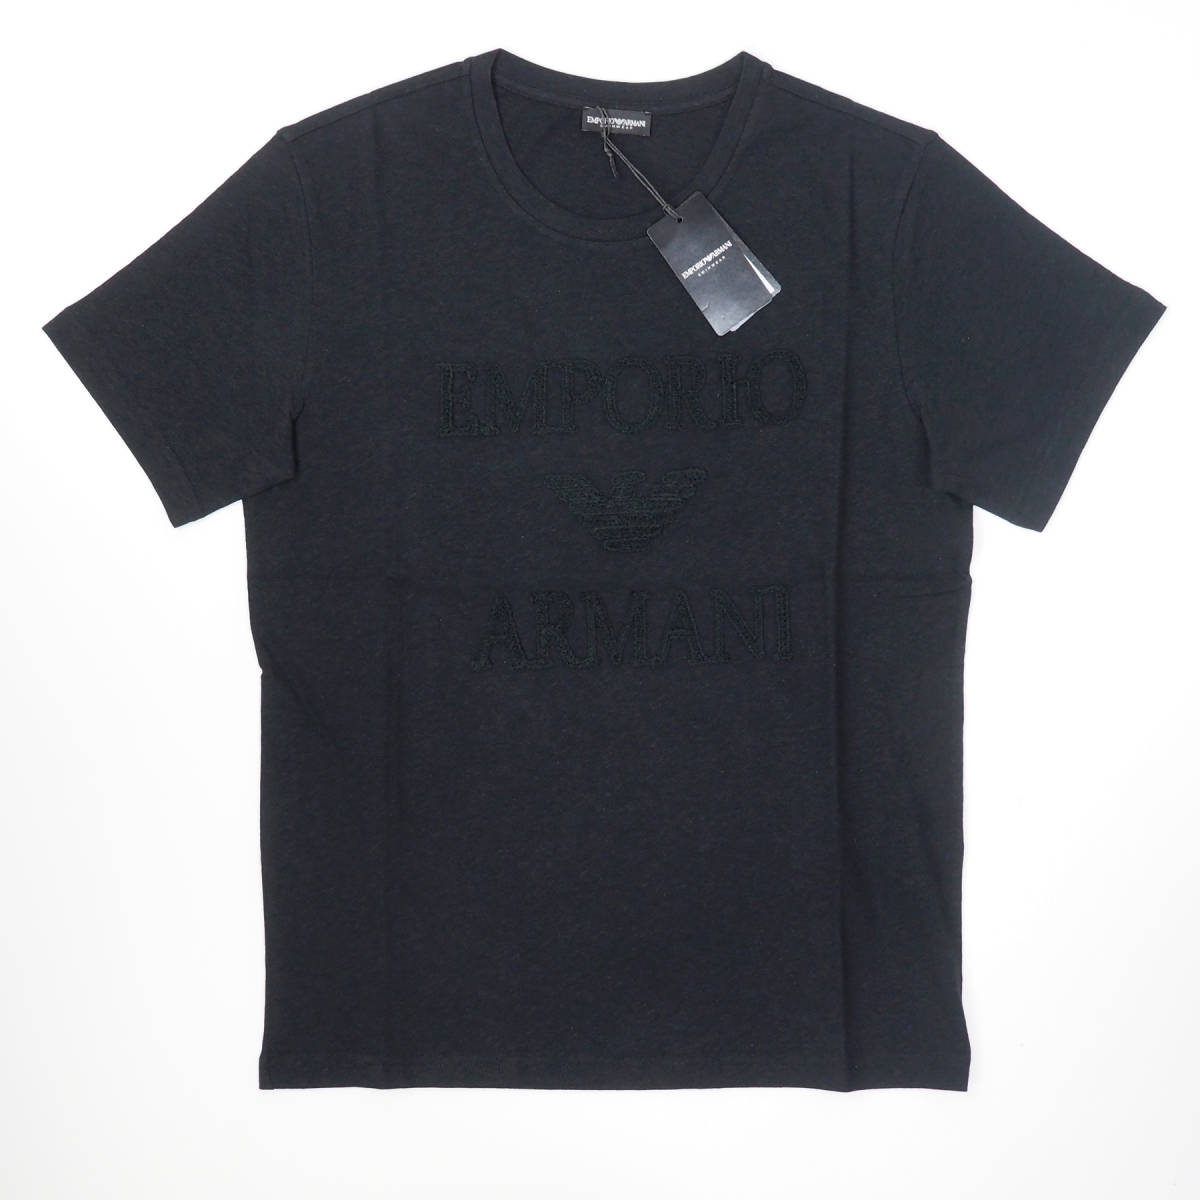 新品正規品 Emporio Armani エンポリオ アルマーニ SWIM 211818 3R485 クルーネック プリント ロゴ リネン Tシャツ ブラック S